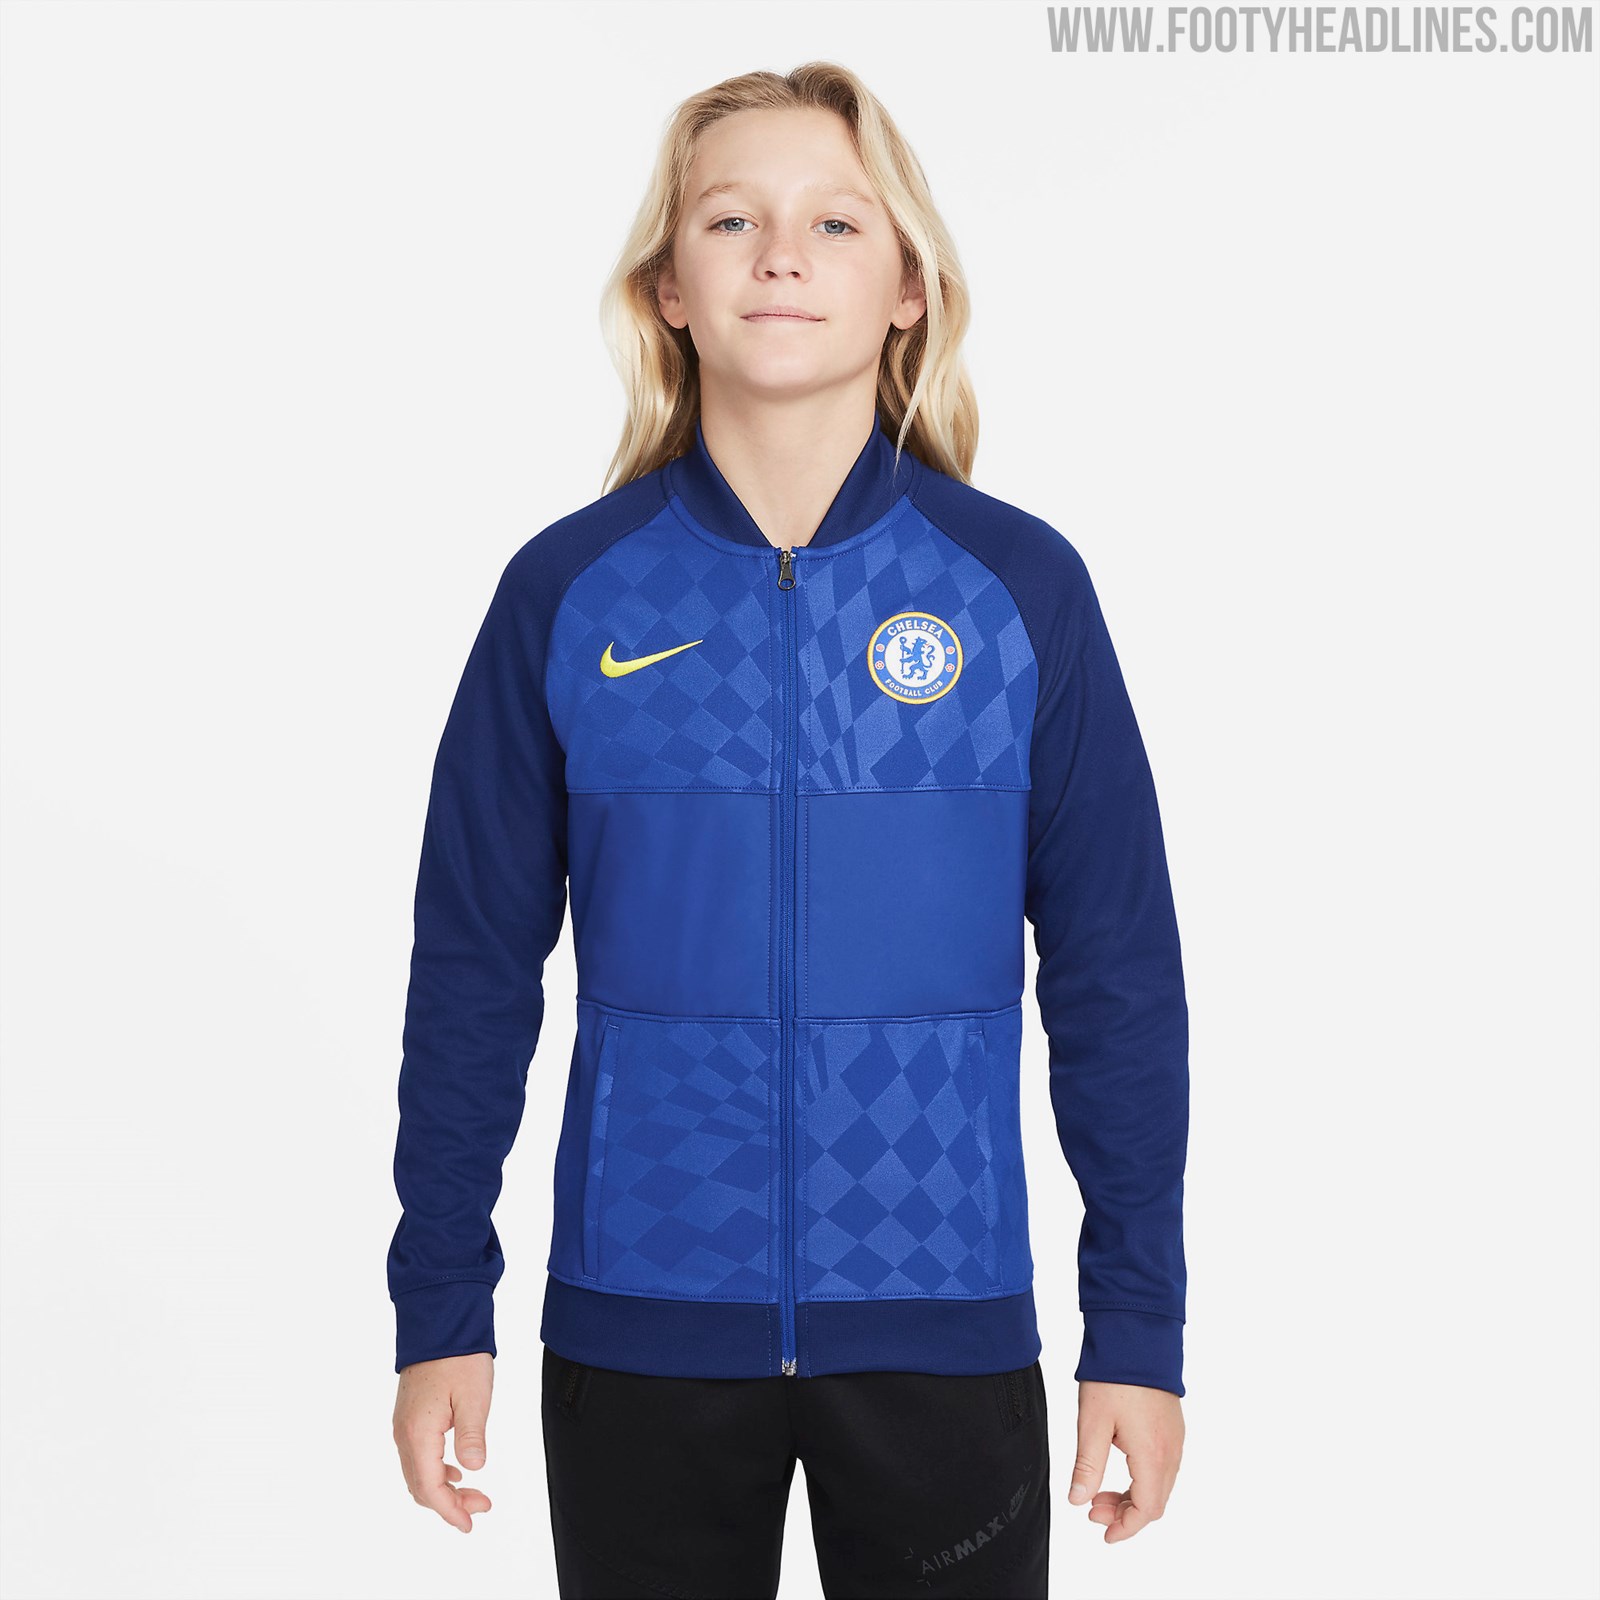 Chelsea 21-22 Anthem Jacket Leaked - Optical Illusion Of Home Kit ...